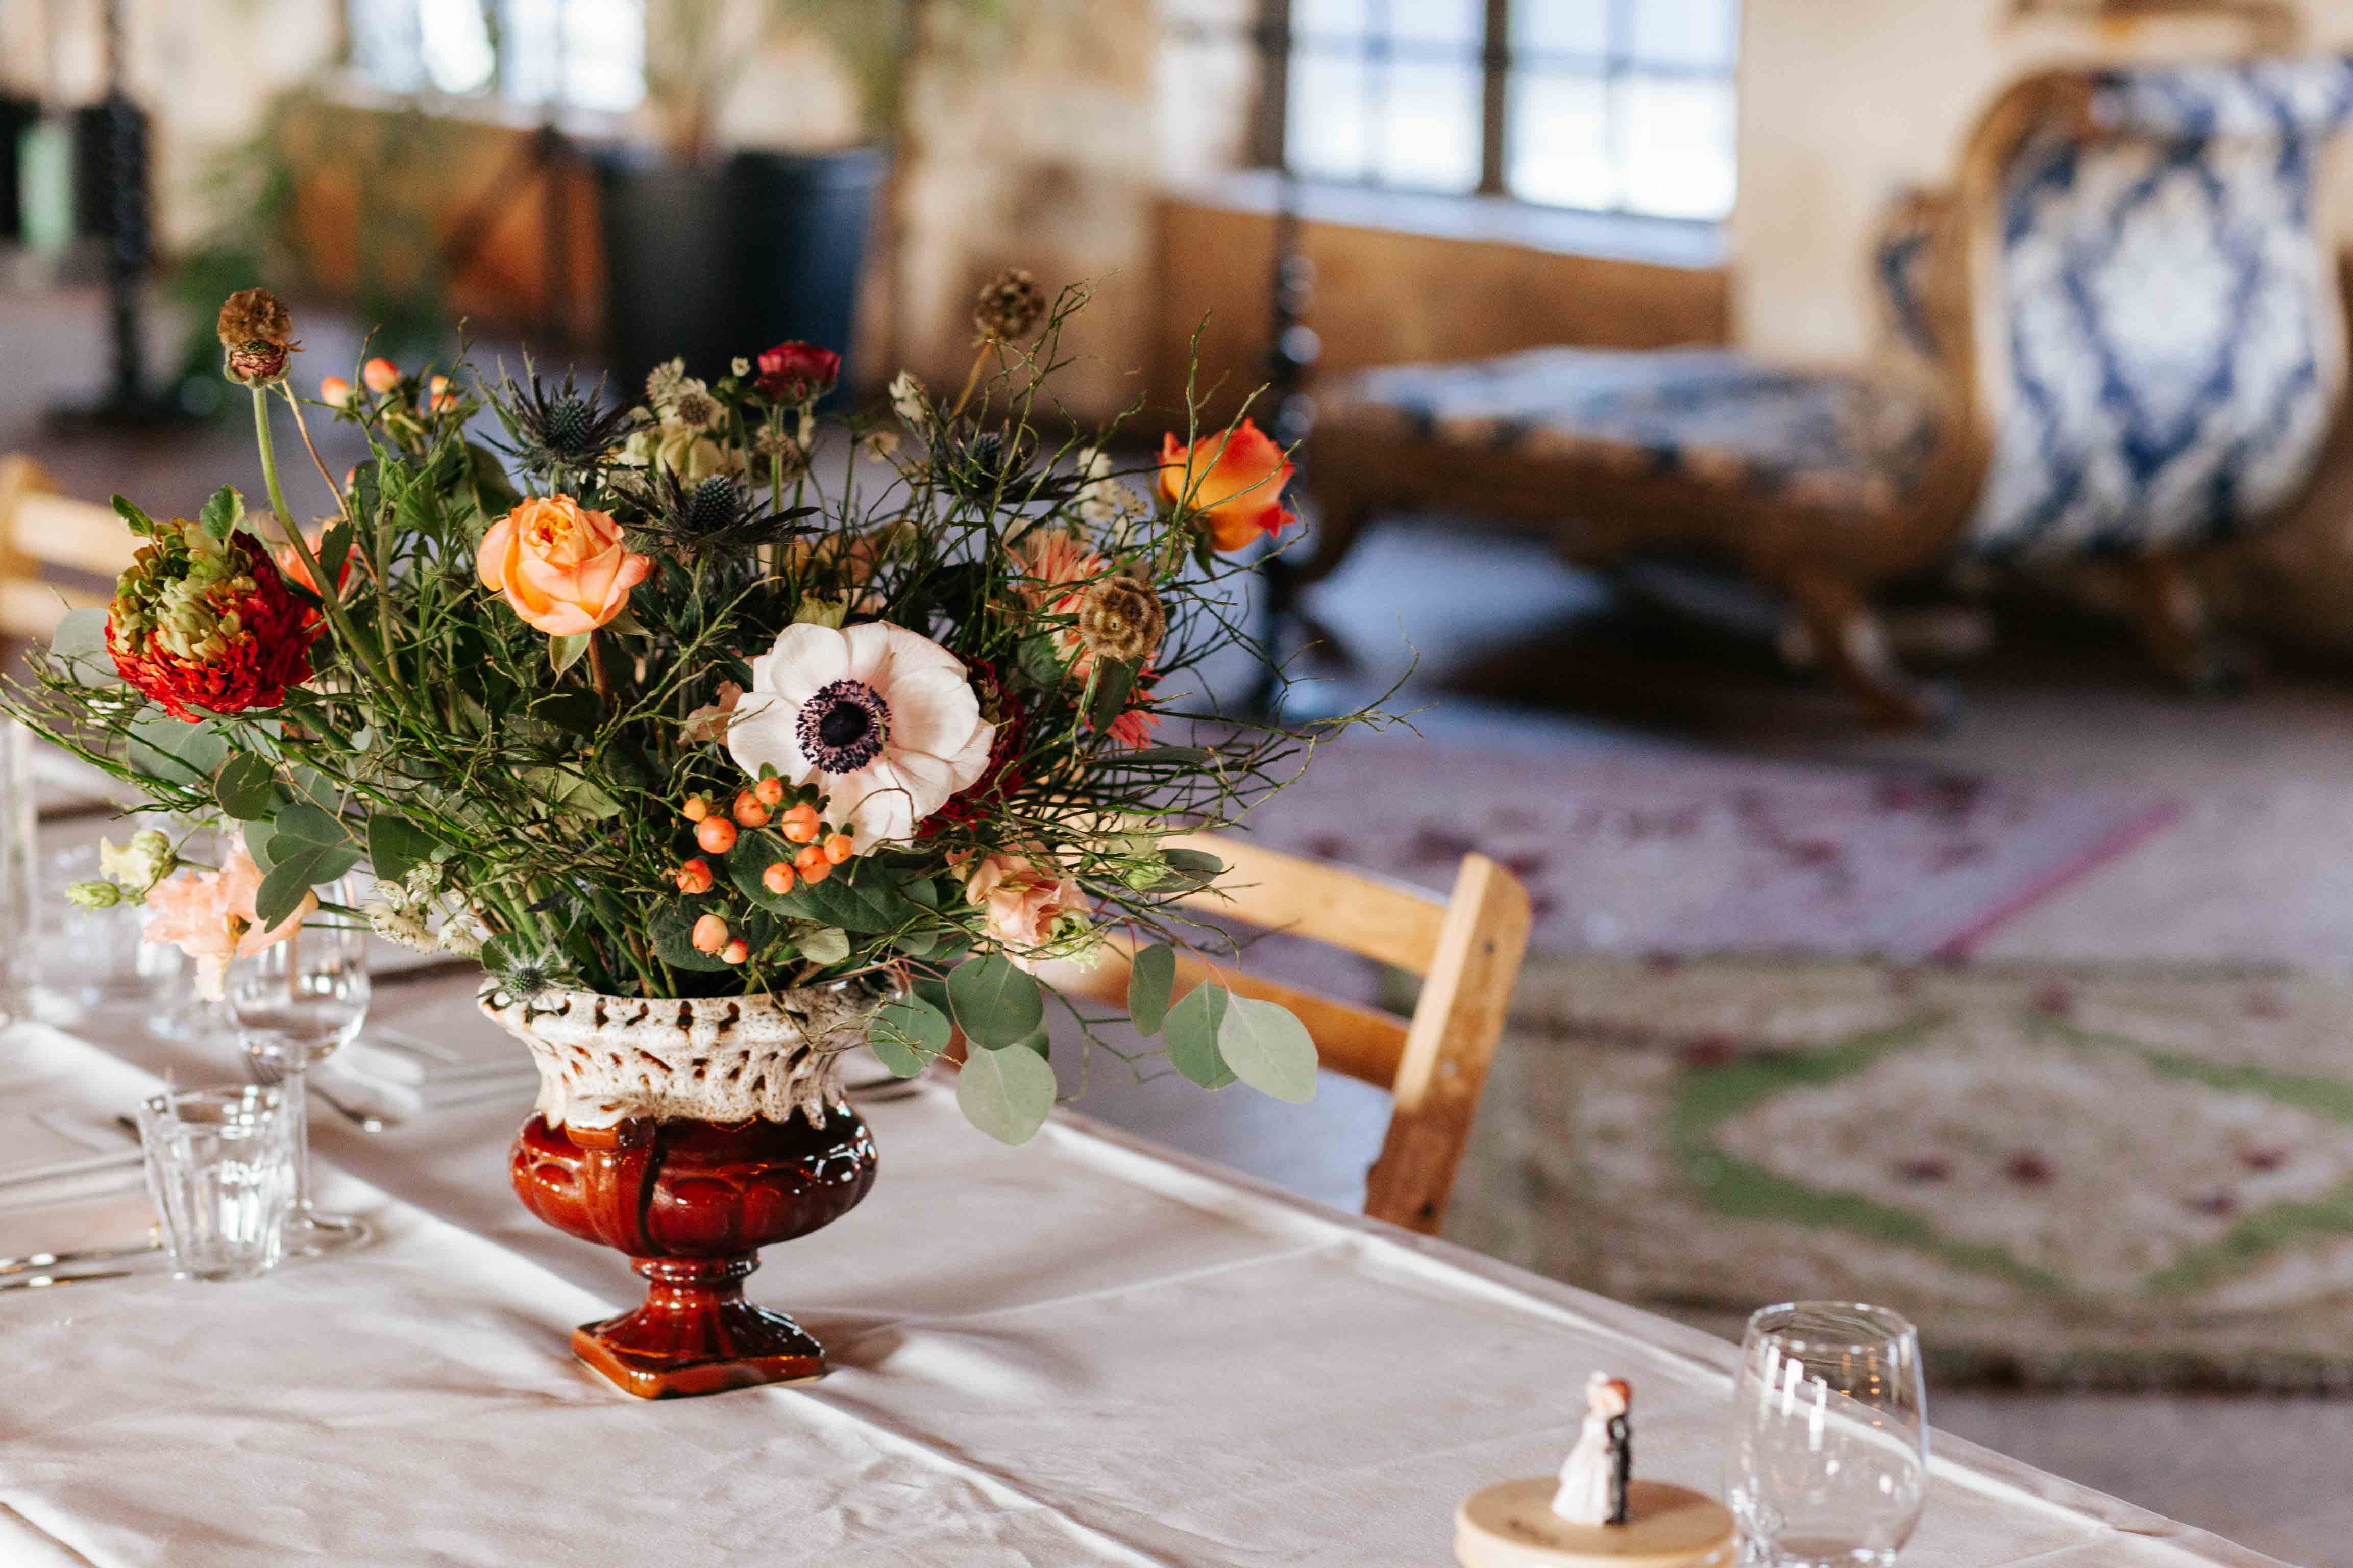 Een mooi gestileerde tafel, met daarop een oude vaas met een kleurrijk boeket bloemen. De bloemen zijn oranje, rood en wit, met veel groen tussendoor. Op de achtergrond zijn een lage bank en twee gekleurde vloerkleden zichtbaar.